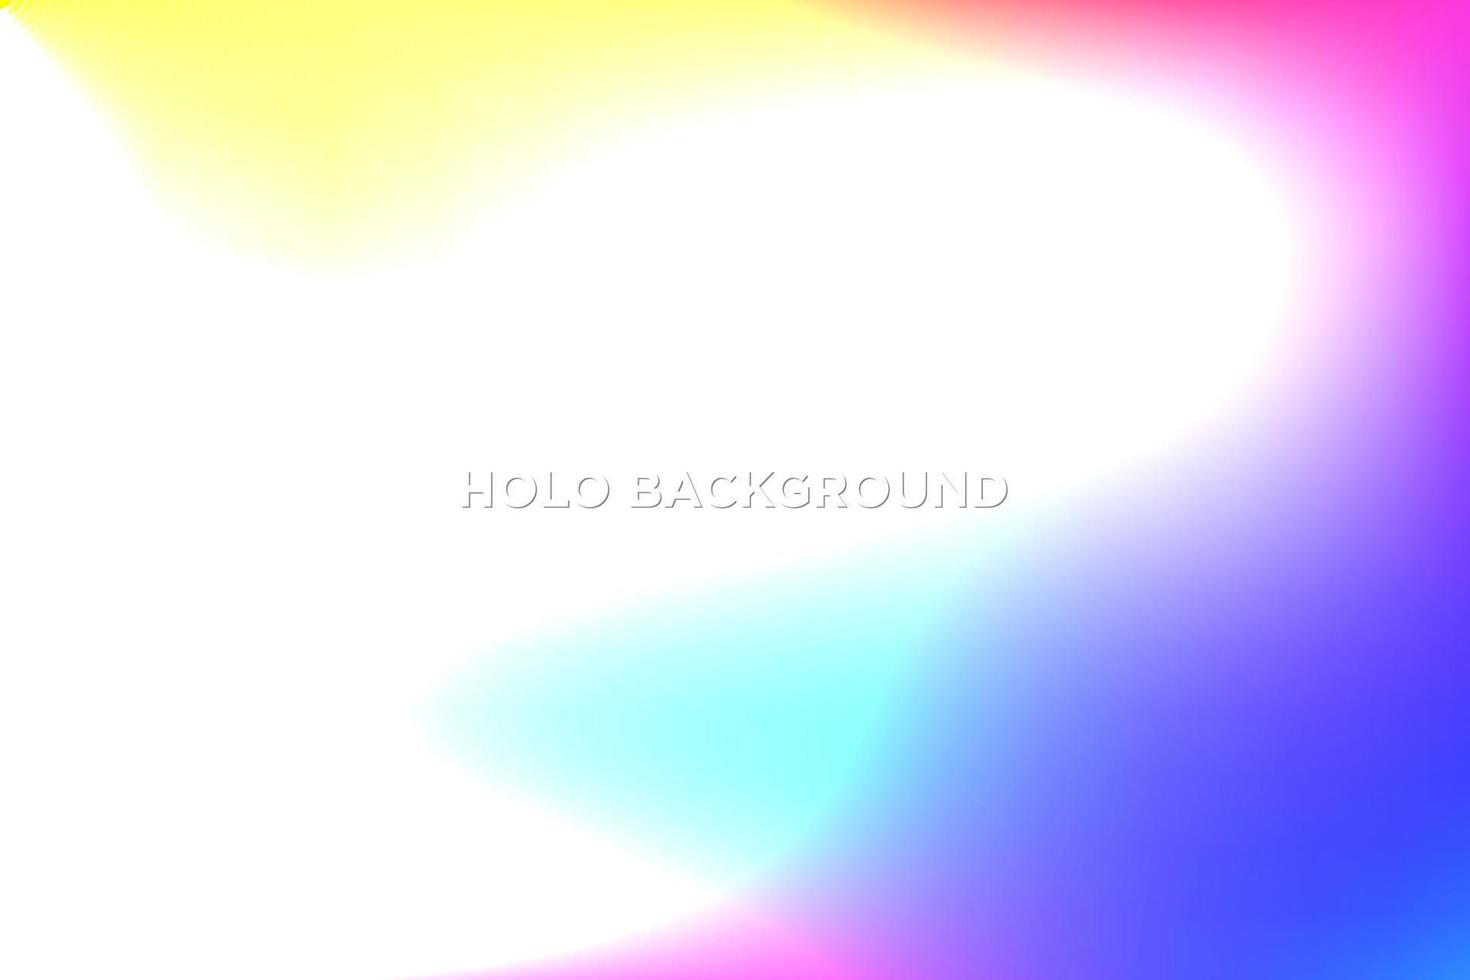 holografische kleurrijke achtergrond vector